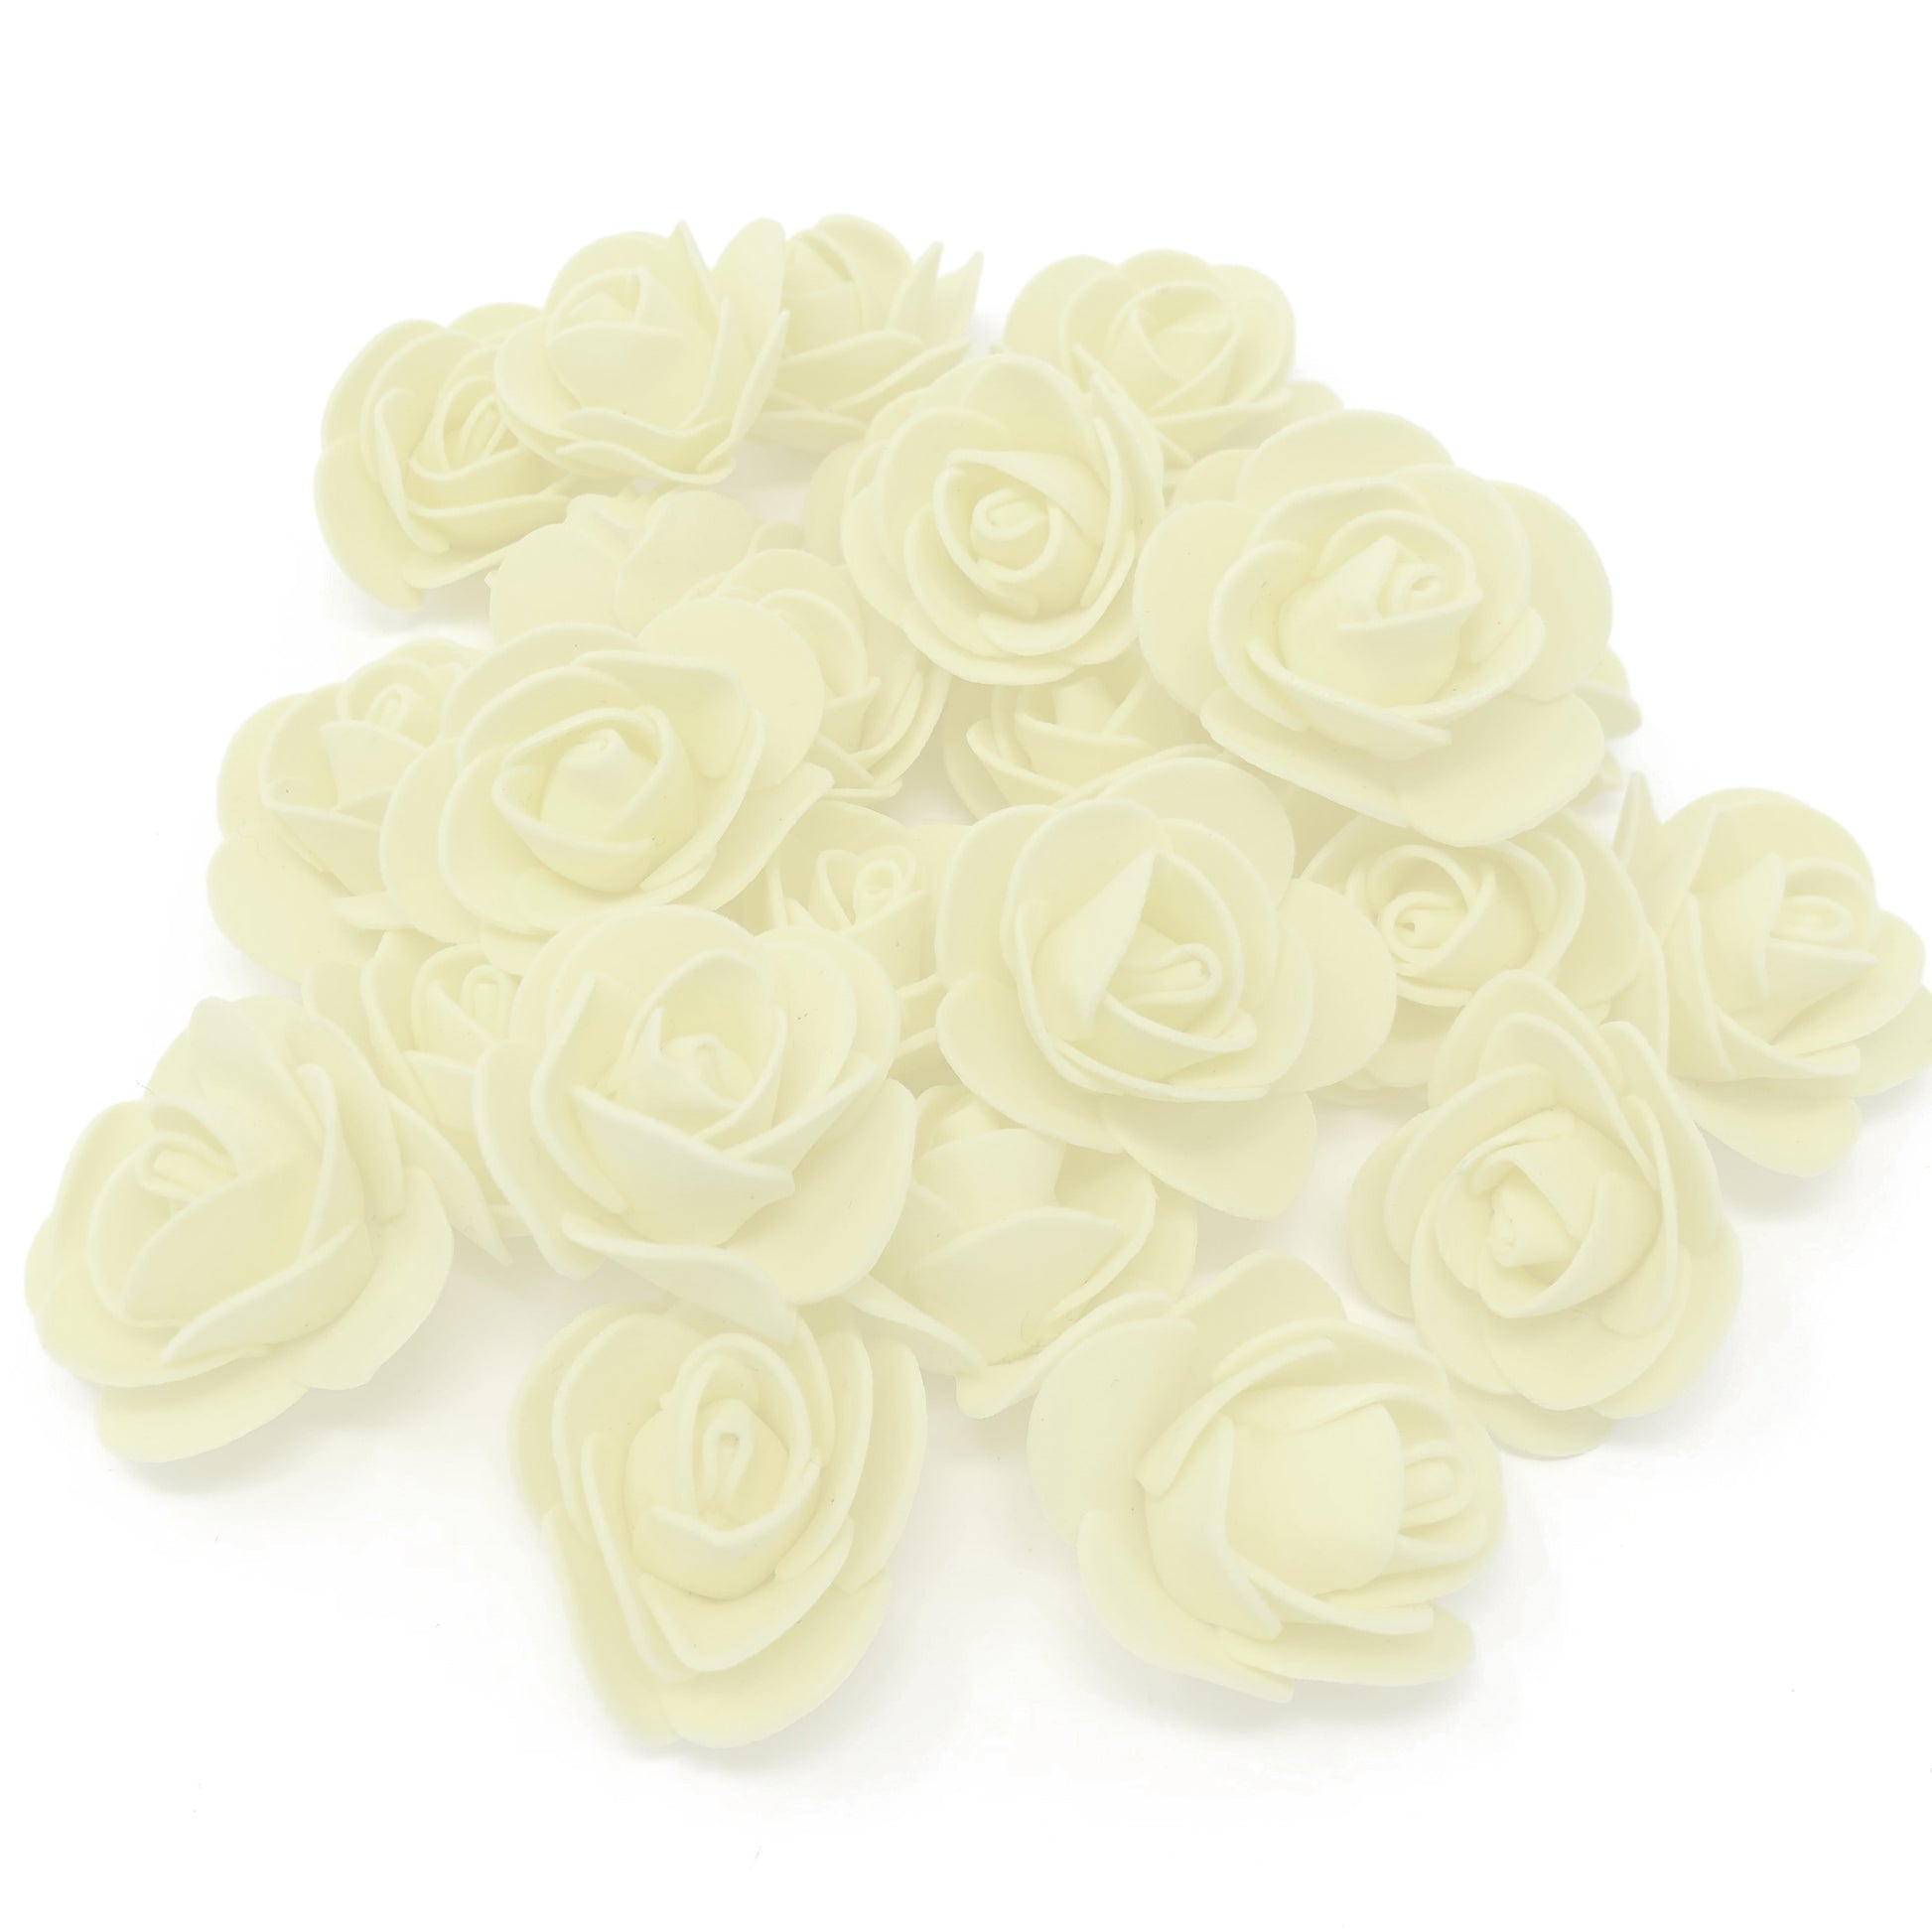 Ivory 30mm Foam Rose Flowers